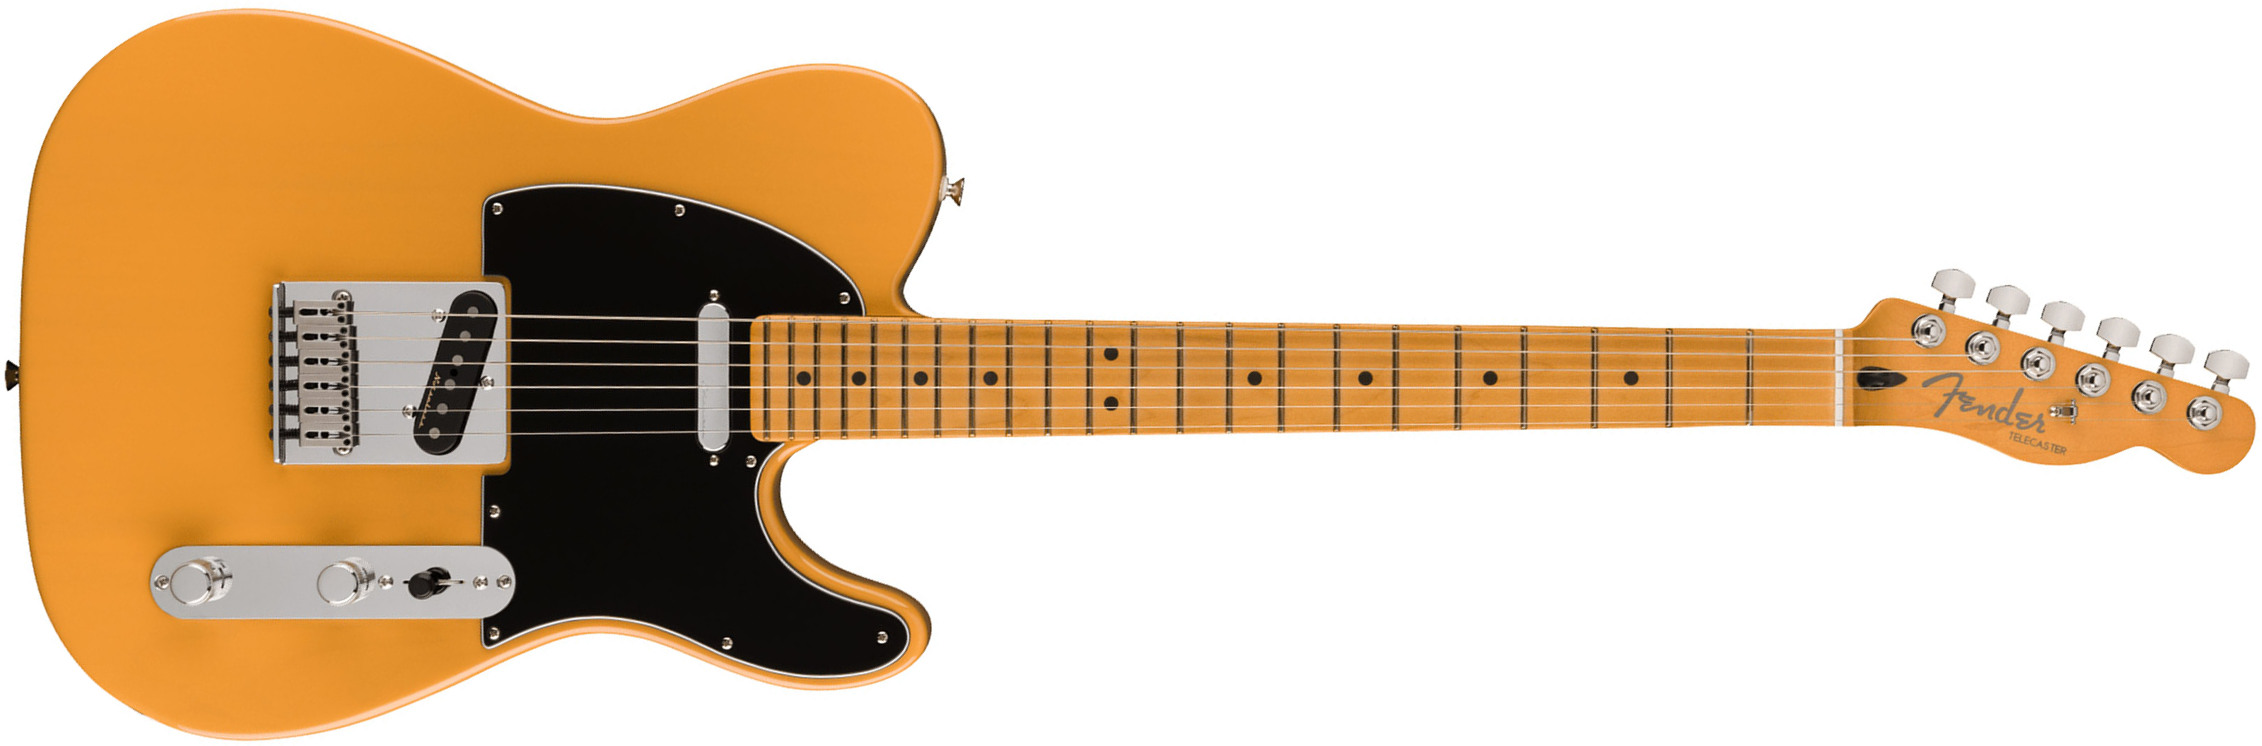 Fender Tele Player Plus Mex 2023 2s Ht Mn - Butterscotch Blonde - Guitarra eléctrica con forma de tel - Main picture